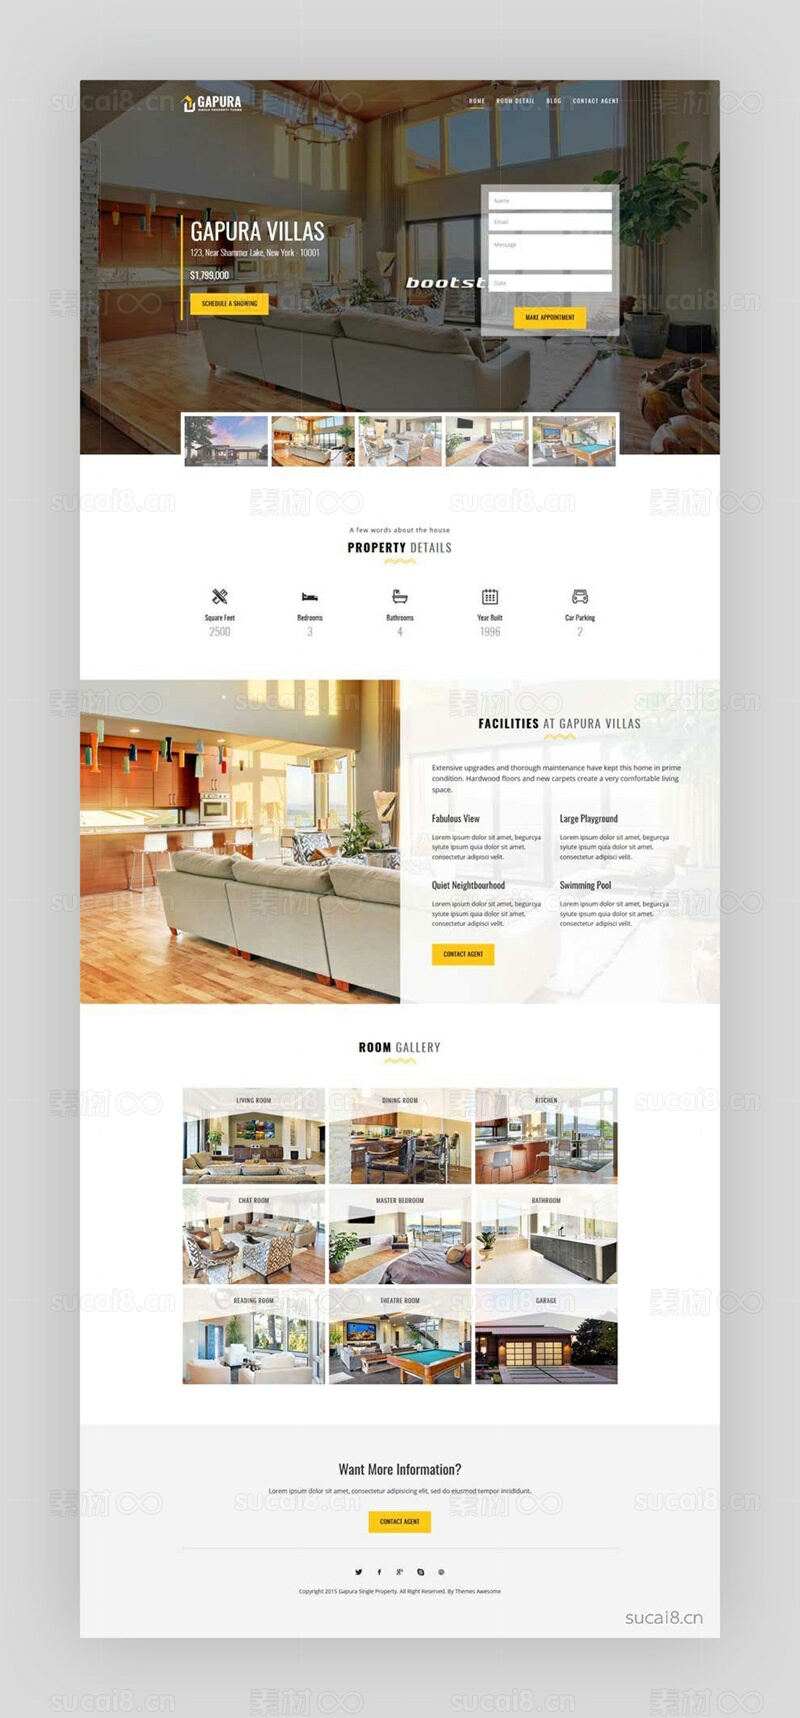 房产中介公司网站HTML模板- 素材8